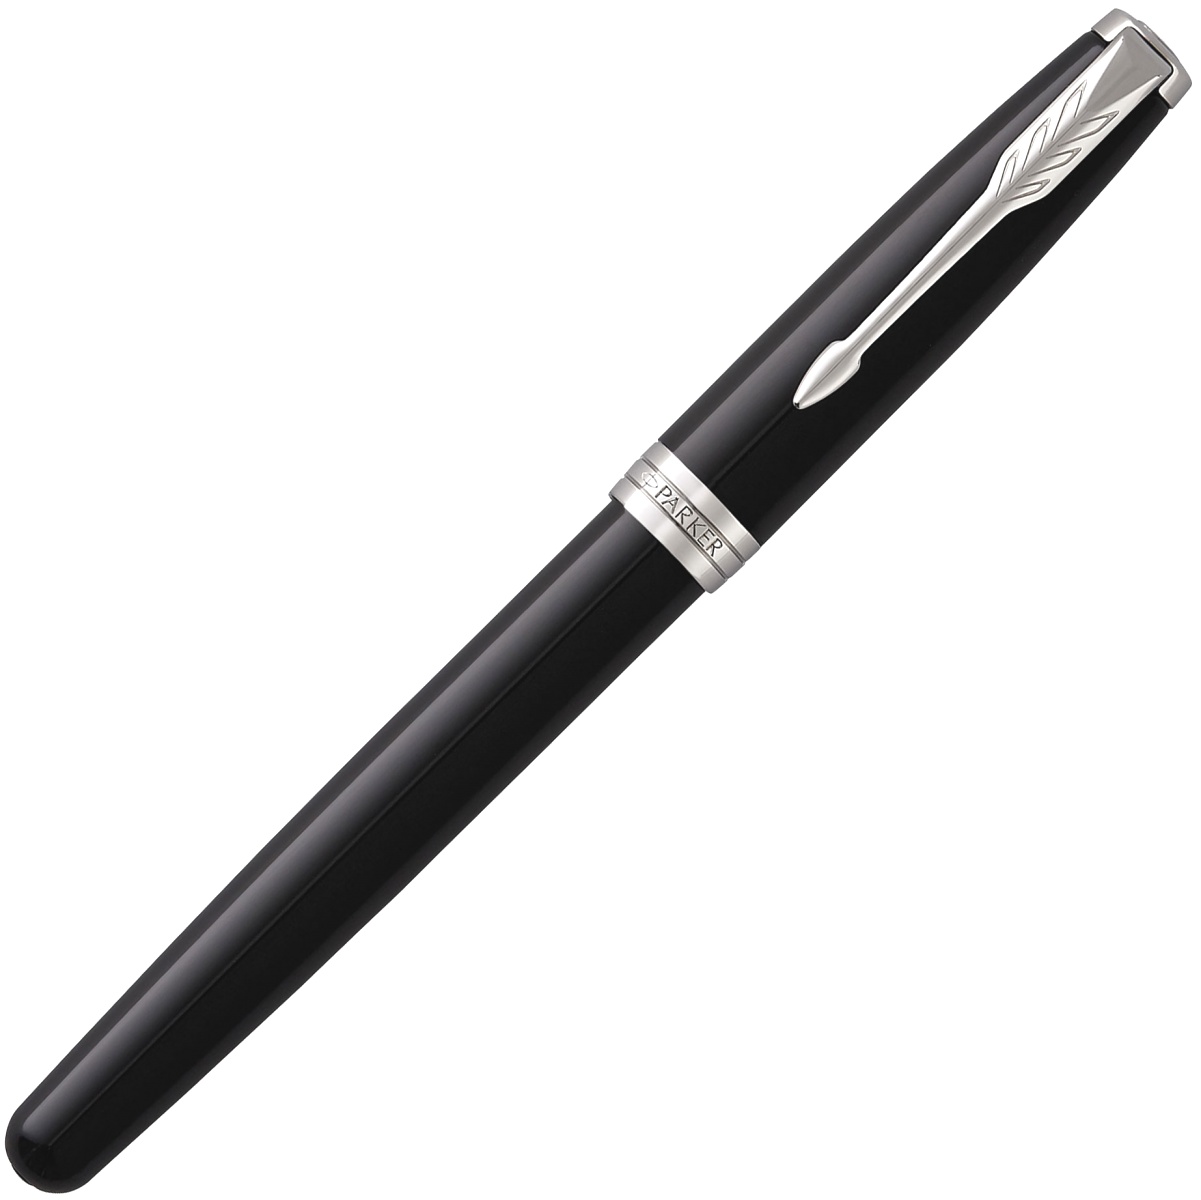  Ручка перьевая Parker Sonnet Core F530, Lacquer Black СT (Перо F), фото 2